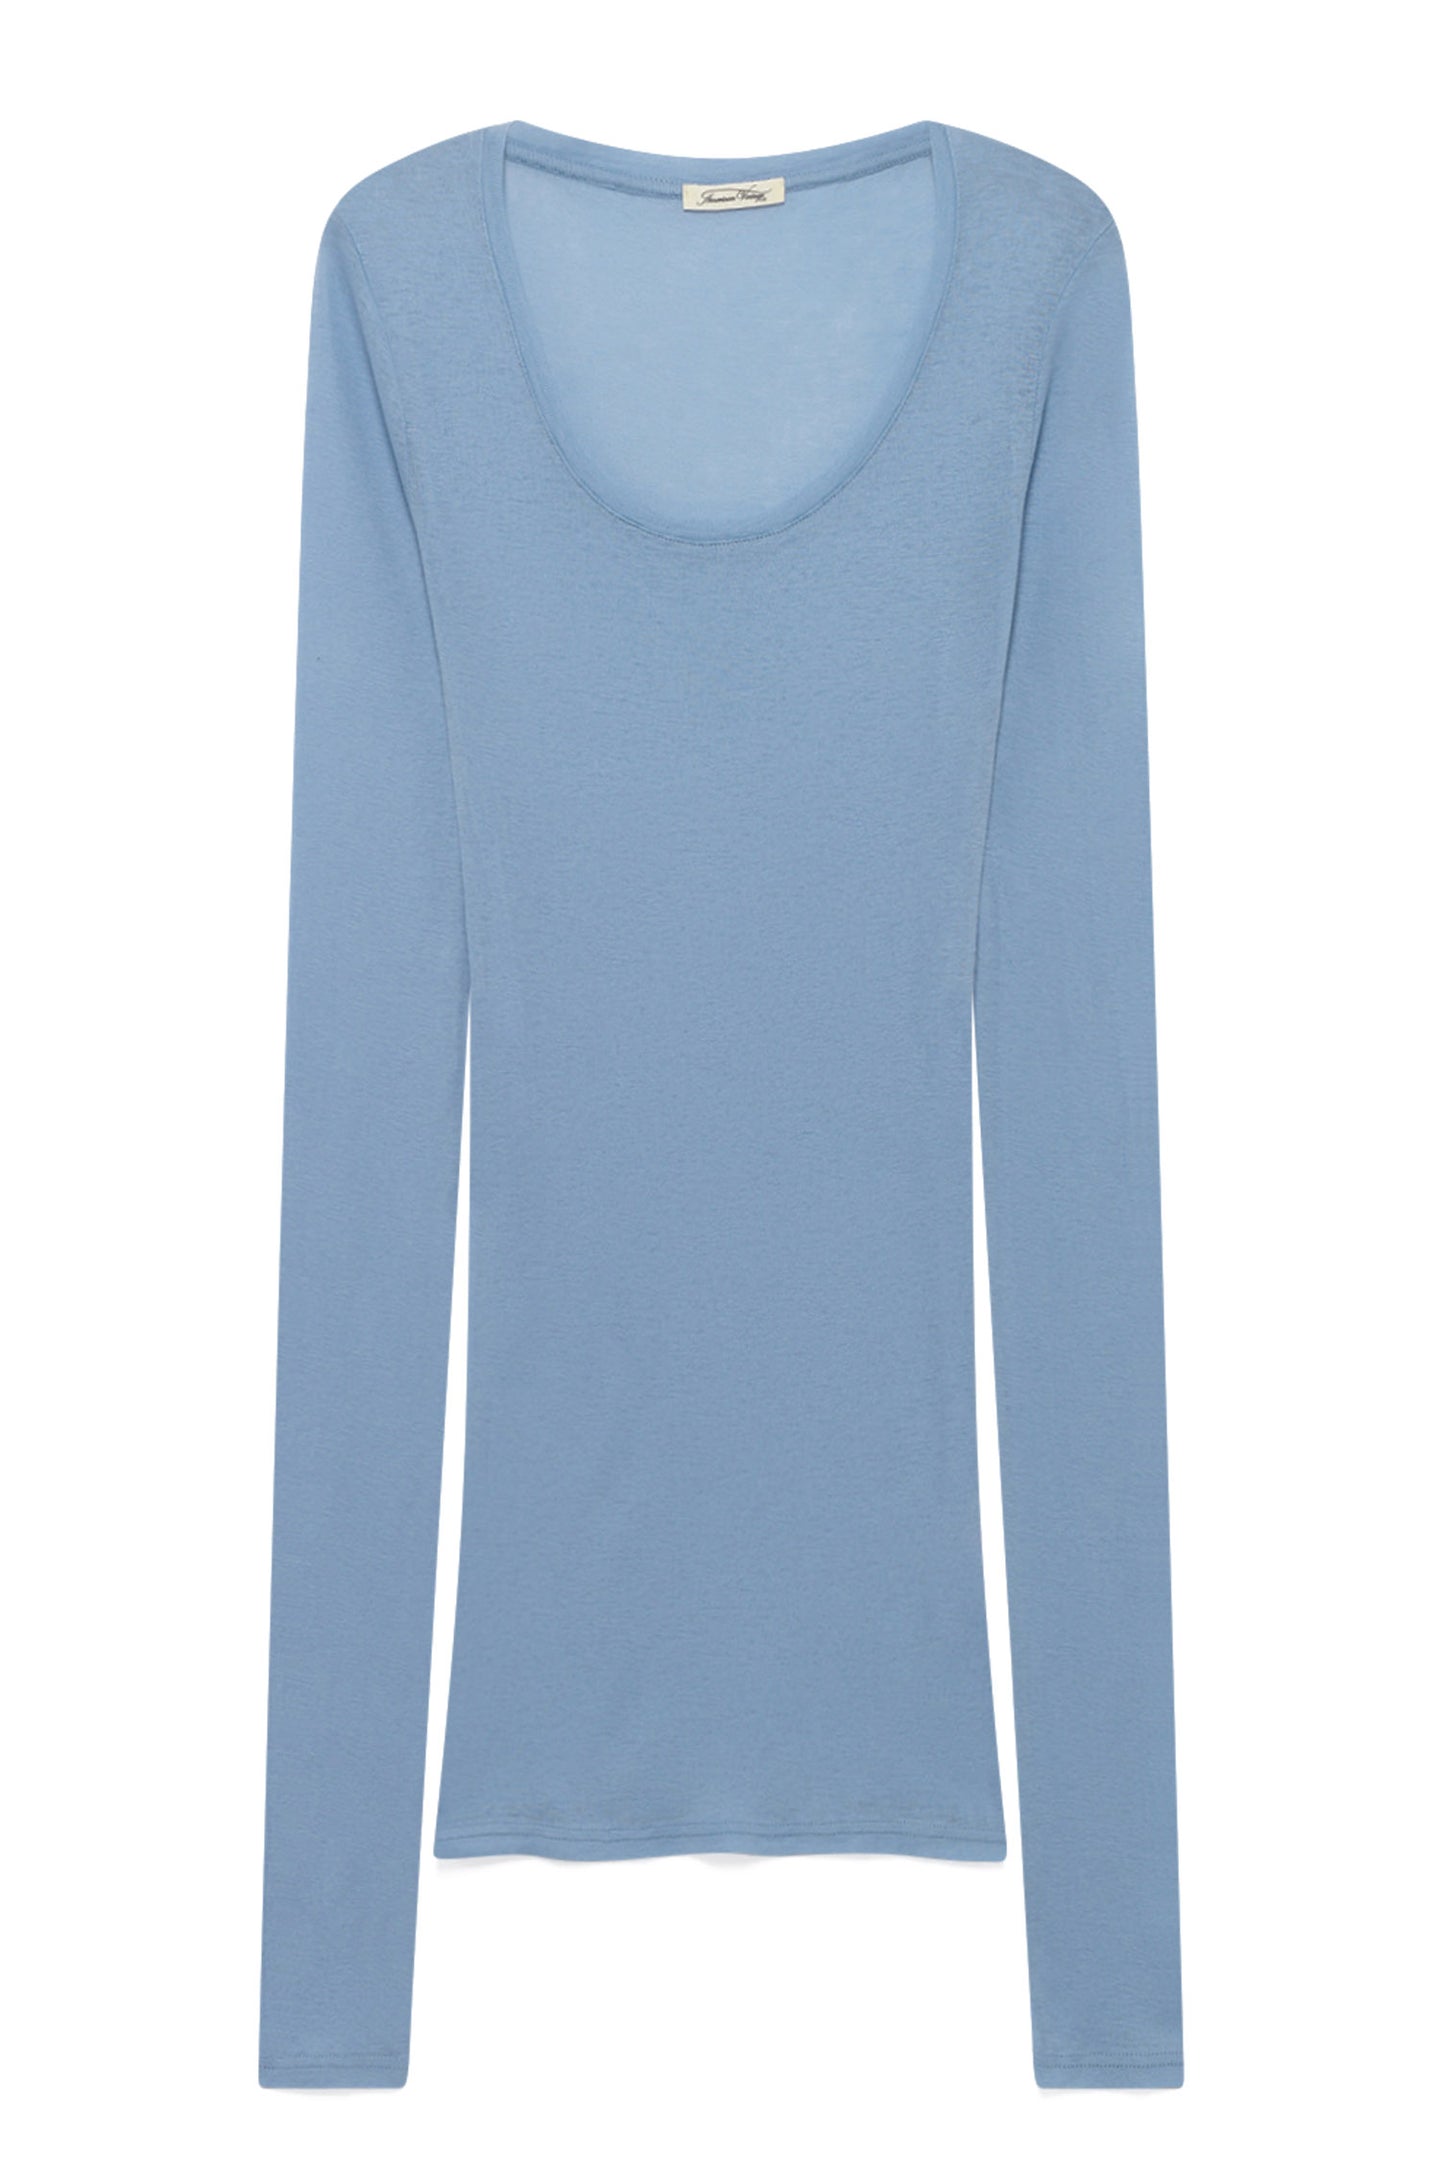 'Massachusetts' Supima Cotton Long-Sleeved T-shirt Ciel - RUE MADAME | BOUTIQUE PARISIENNE